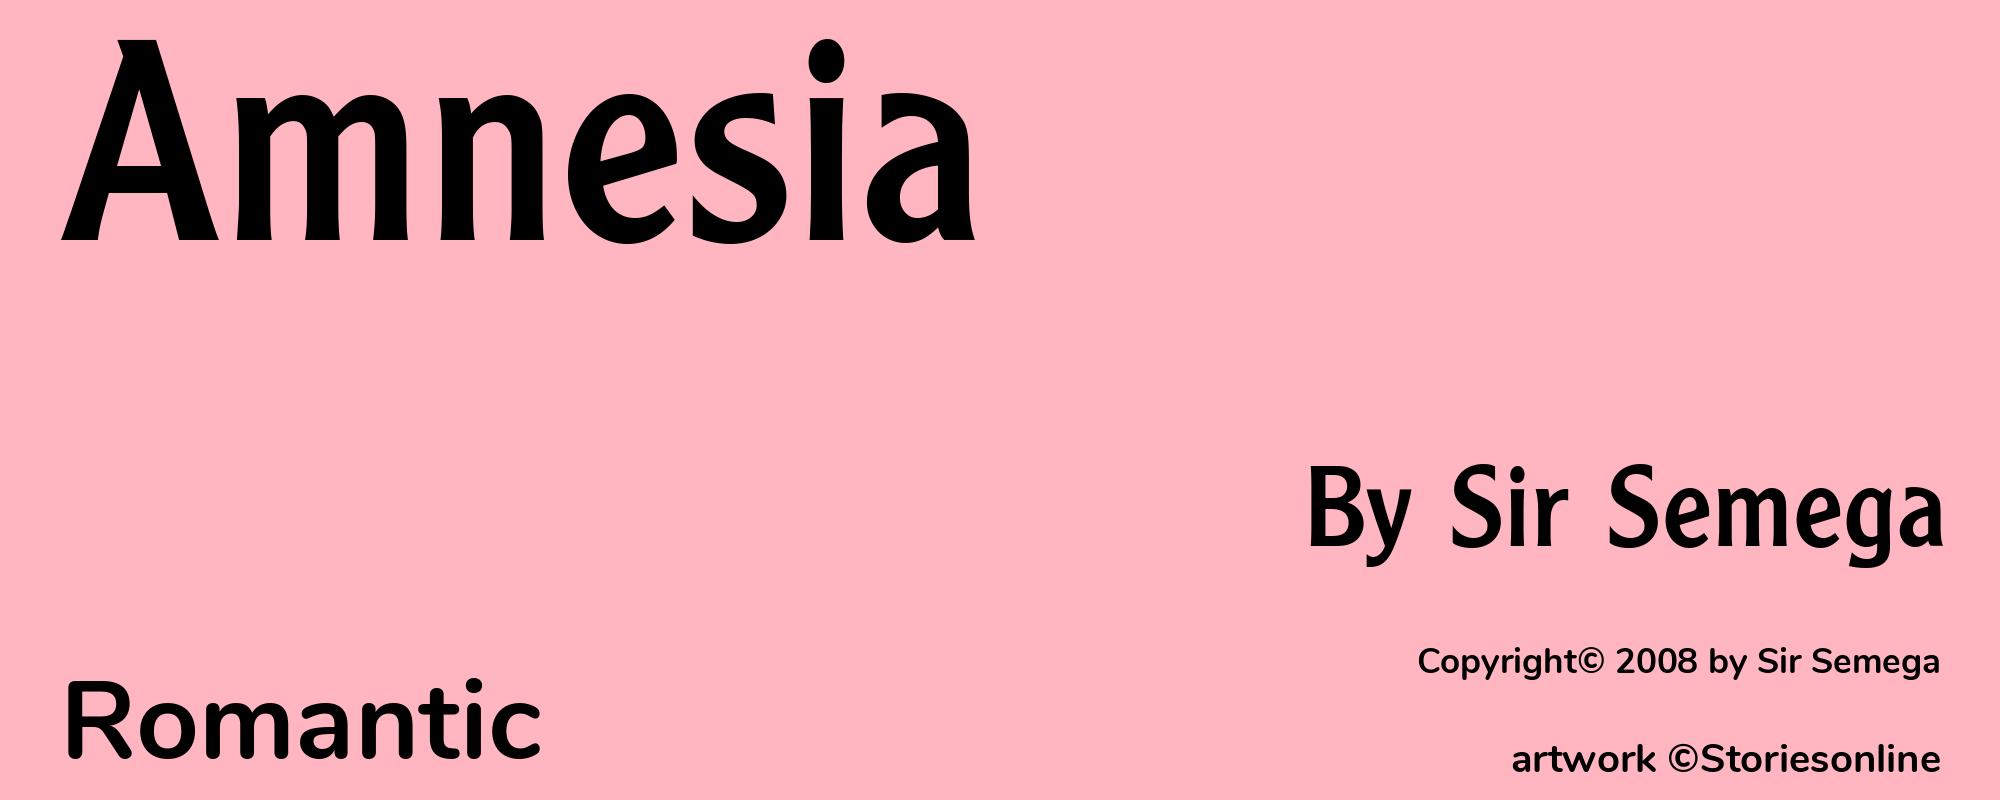 Amnesia - Cover